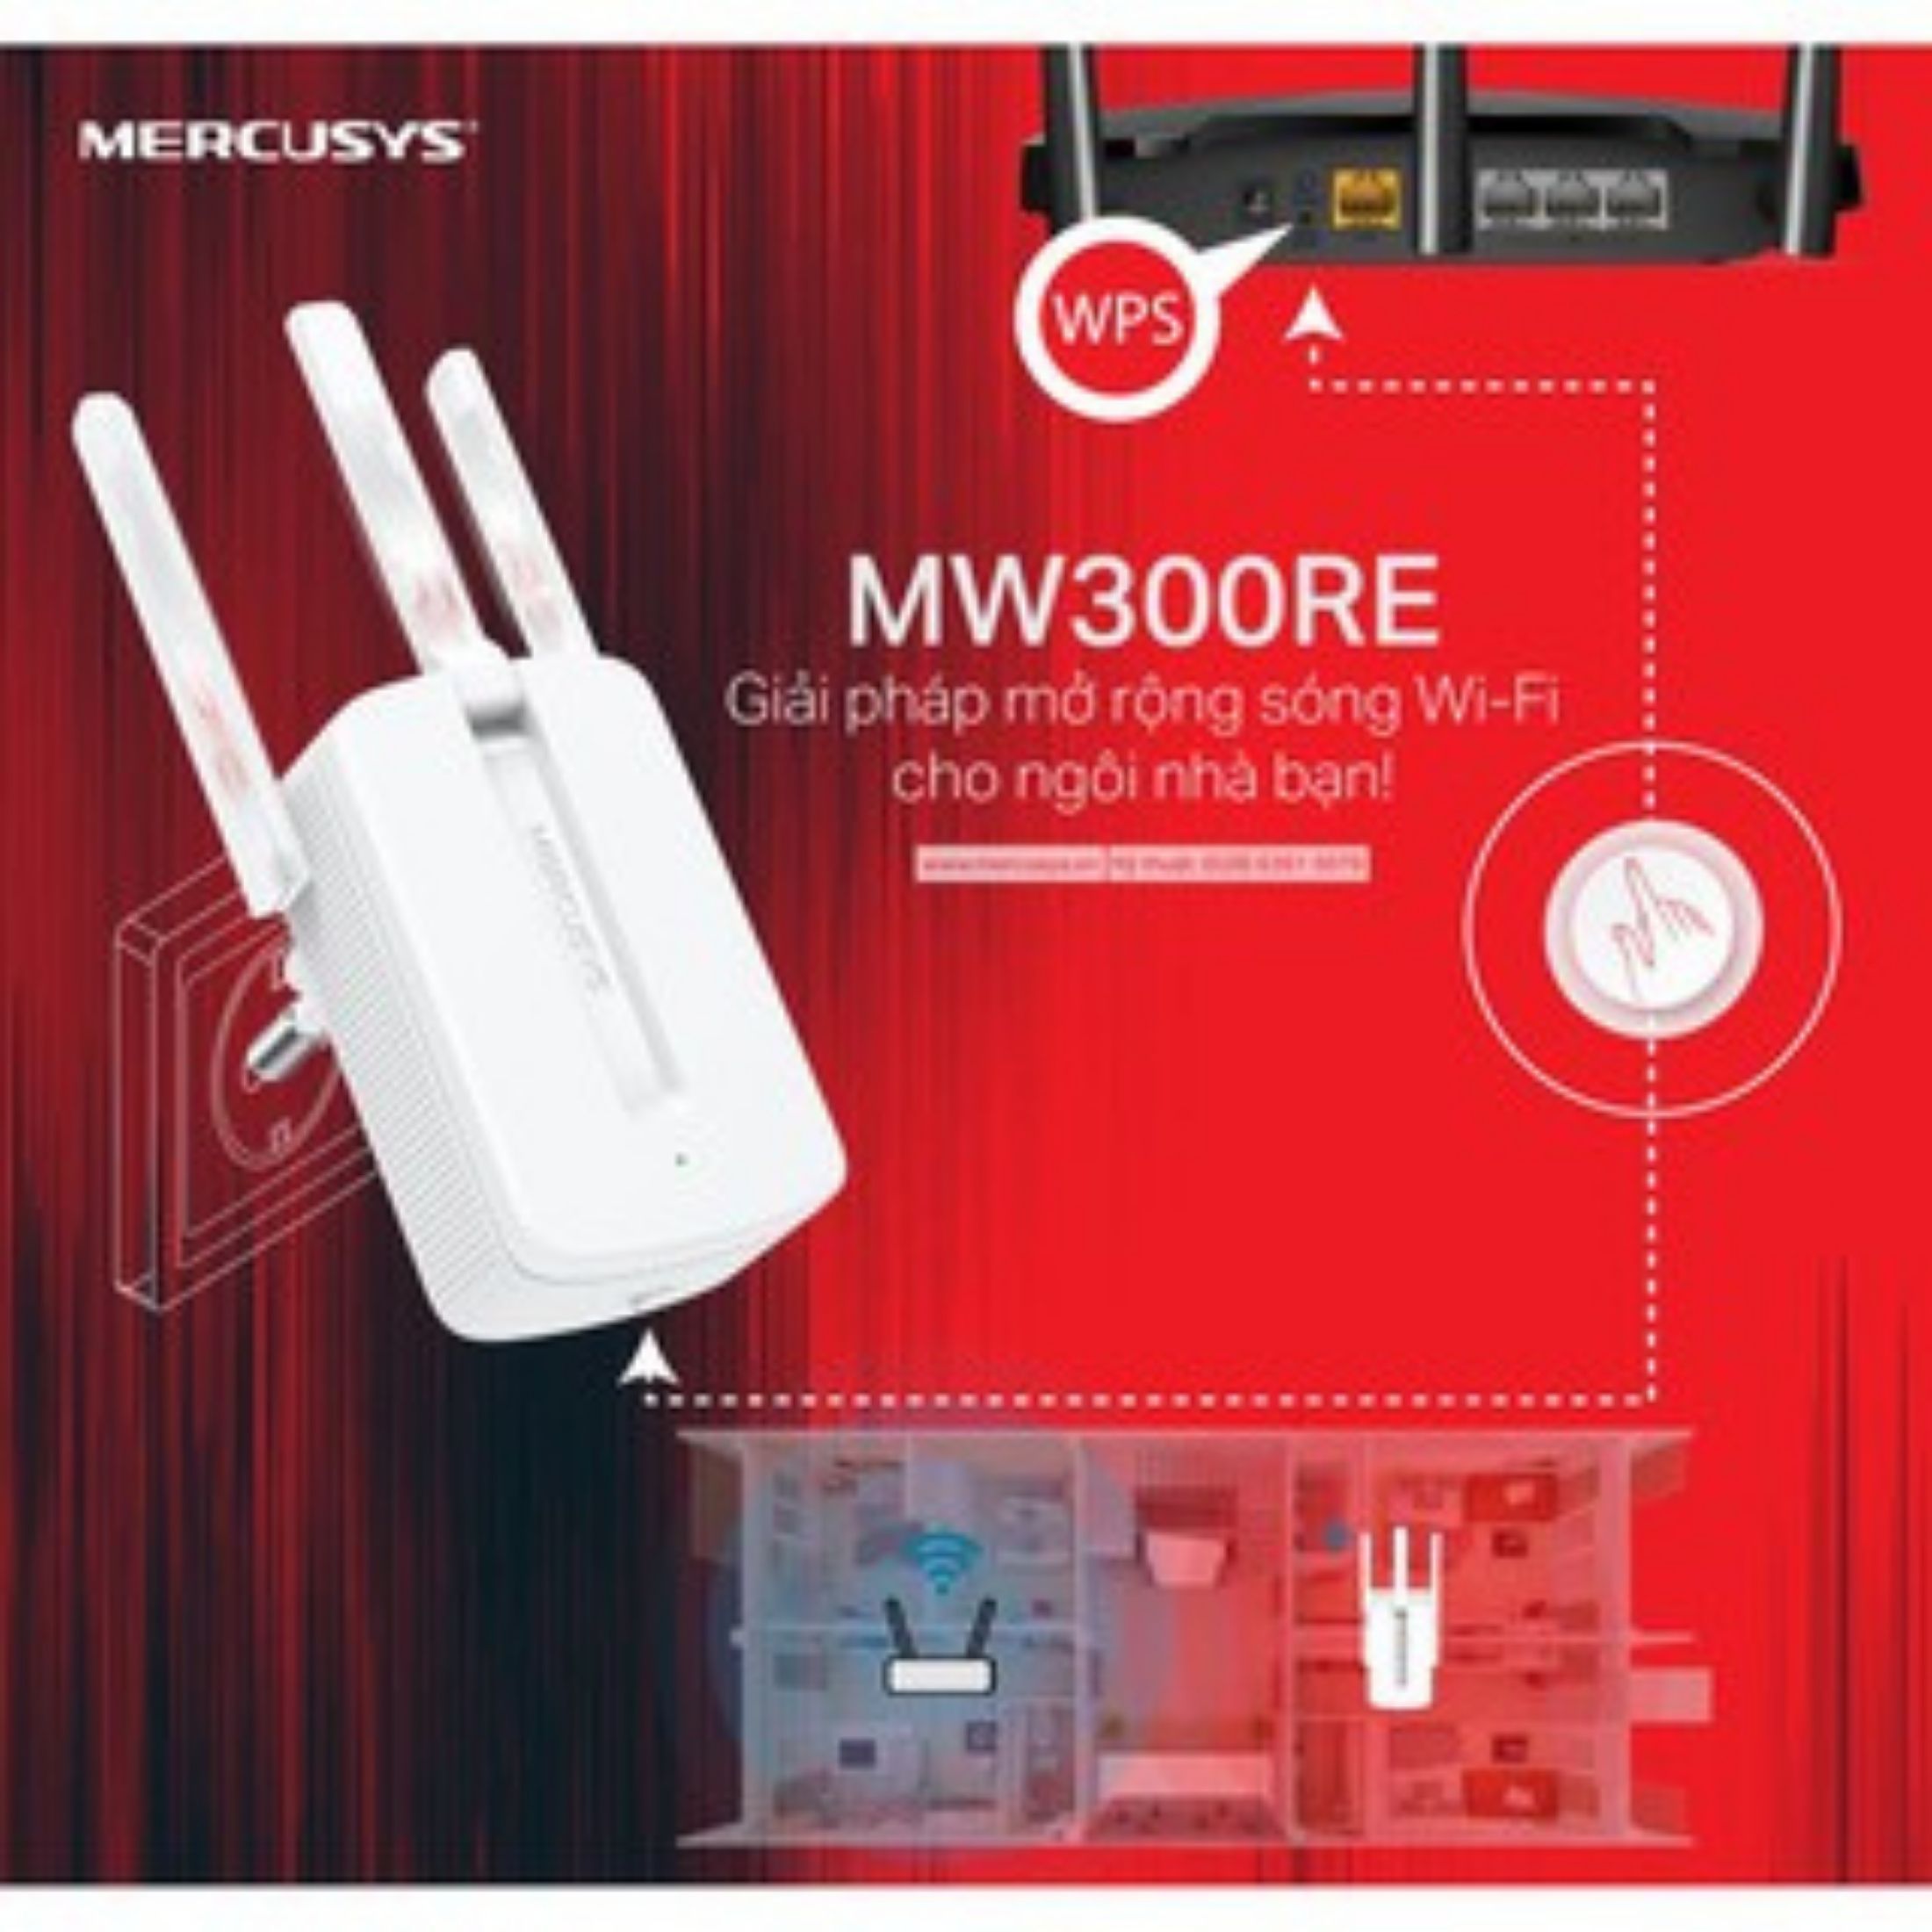 Bộ Kích Sóng Wifi 3 râu cực mạnh Mercusys MW300RE tốc độ 300Mbps - Cục kích Wifi, hút wifi, bộ...